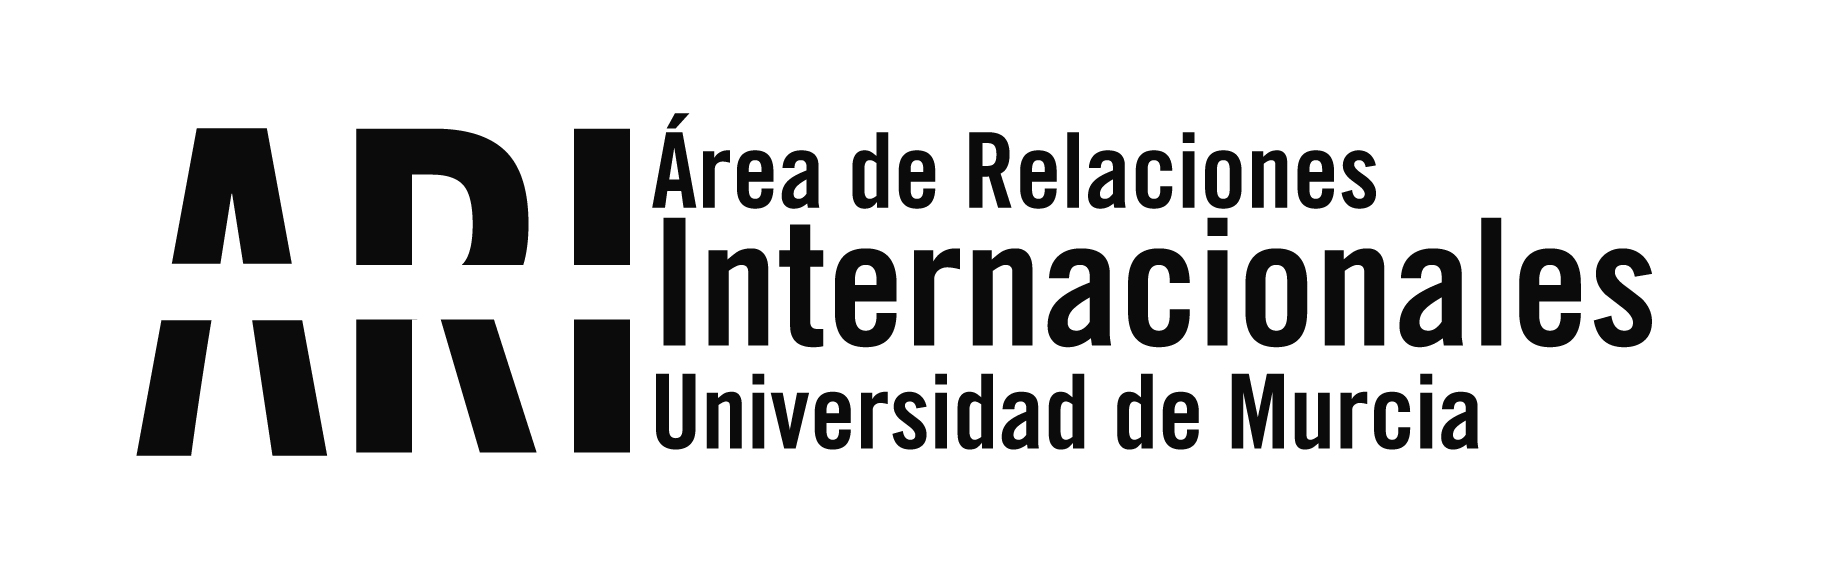 2014-11 Encuentro entre Universidades Rusas y Españolas - Madrid - Viajes Institucionales - Área de Relaciones Internacionales